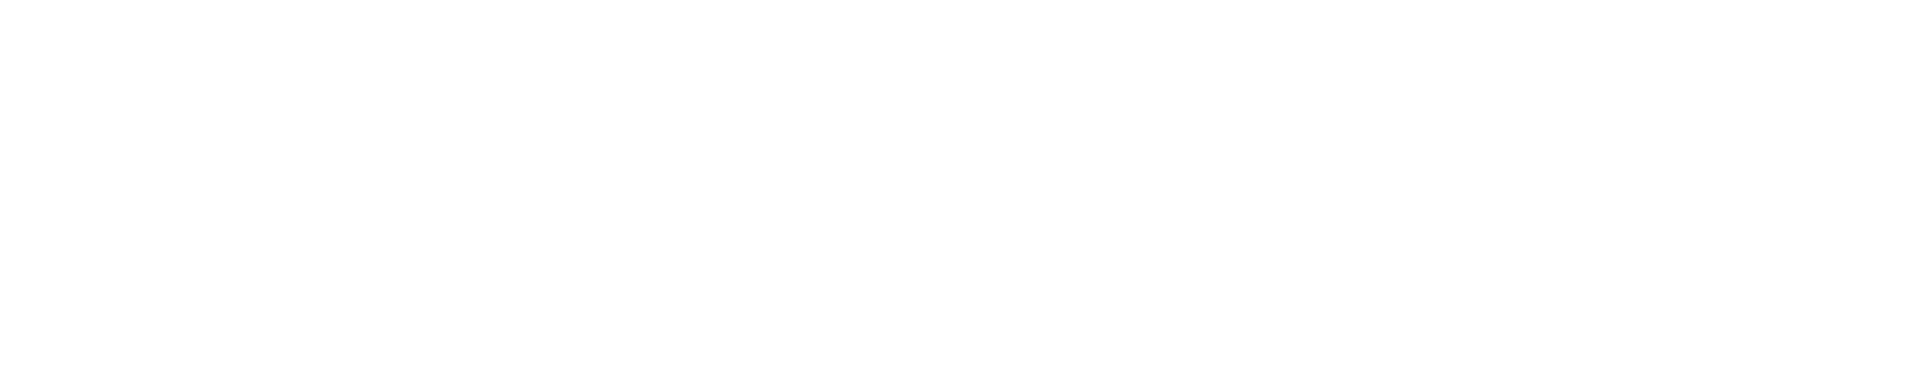 Cruceros Rías Baixas - Plan de recuperación trasformación y resiliencia